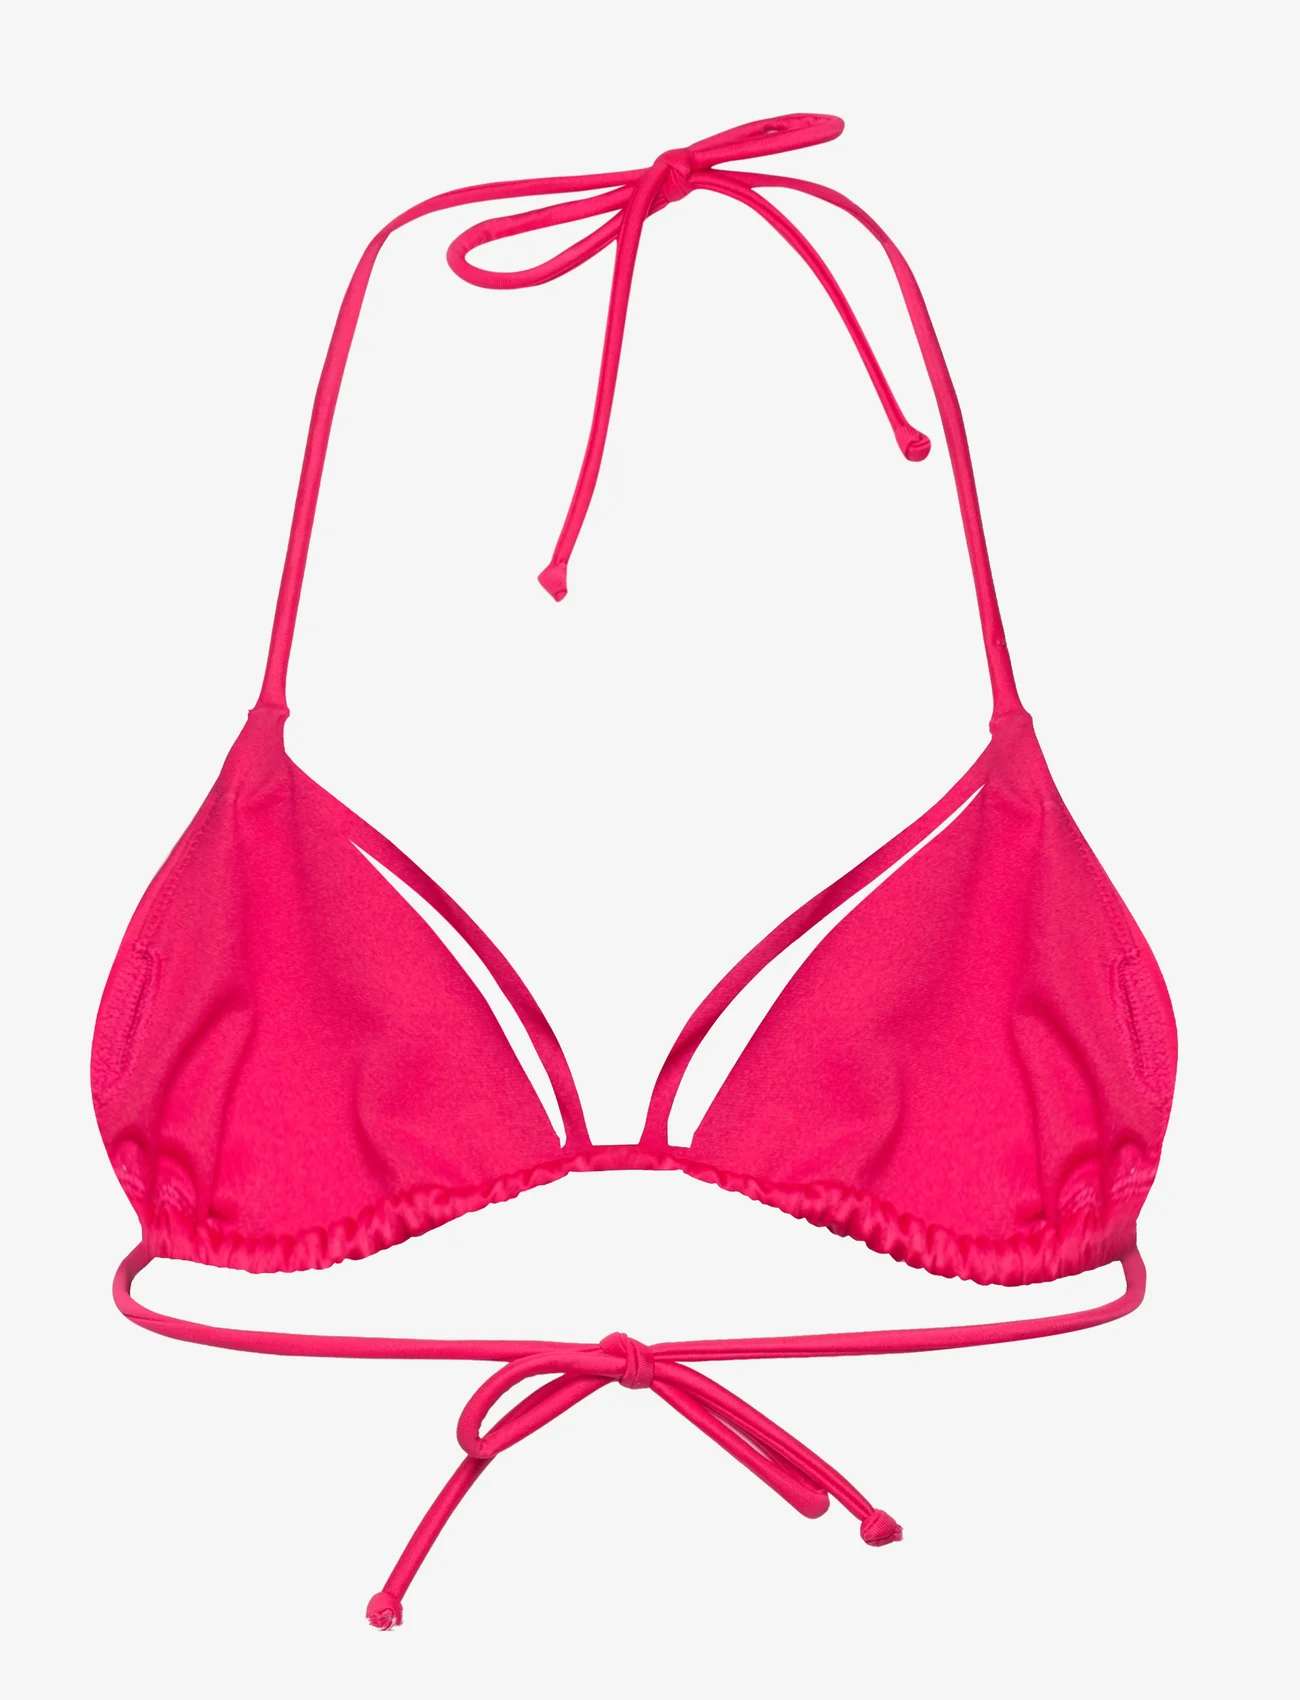 Dorina - ABUJA TRIANGLE - bikinien kolmioyläosat - pink - 1